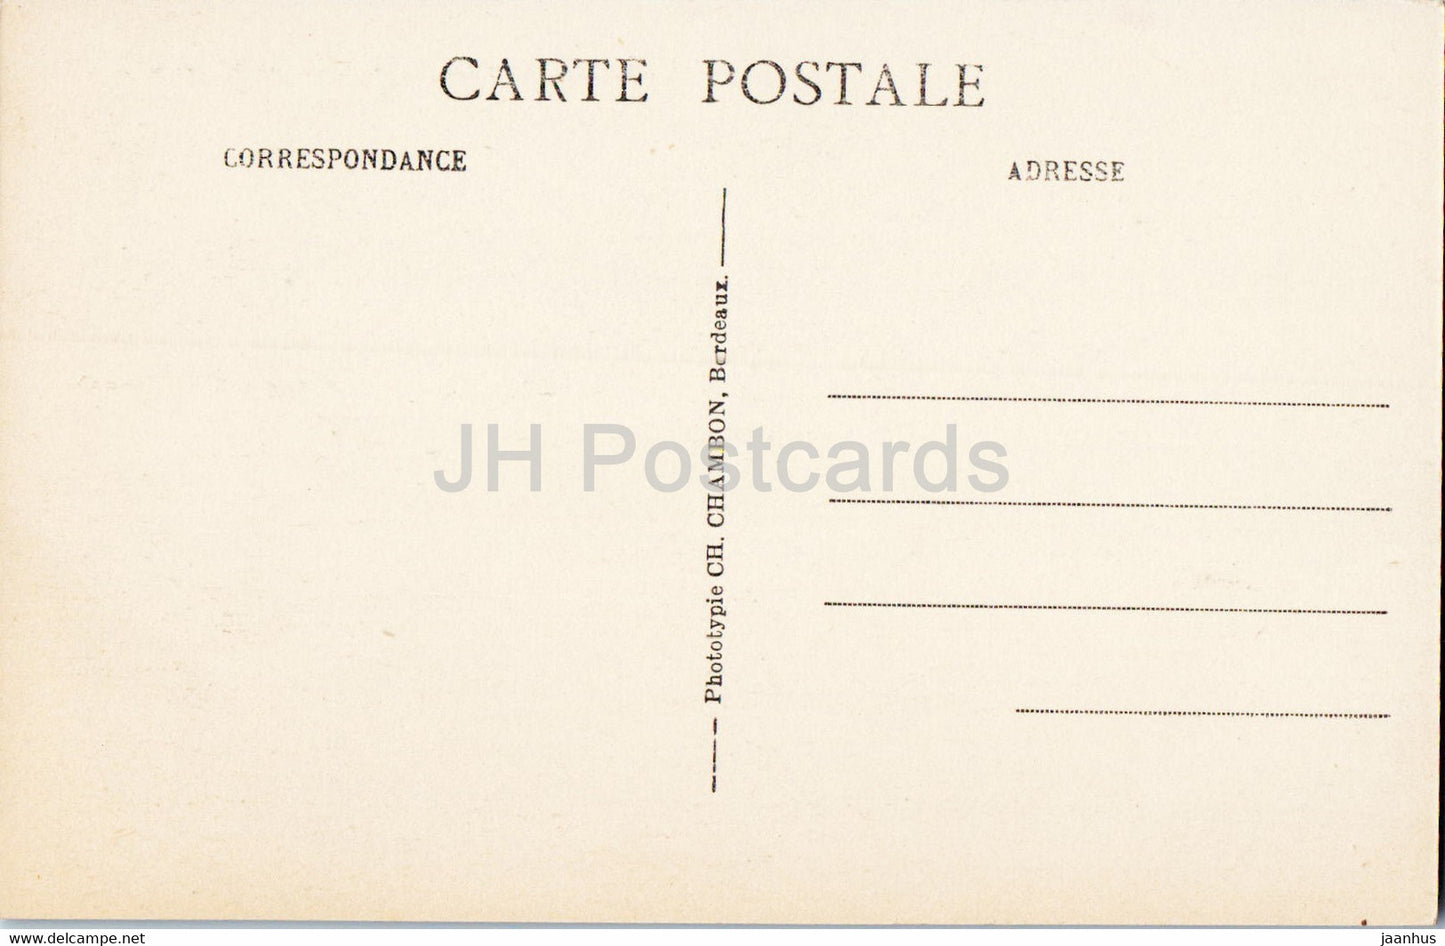 Bordeaux - Cours du XXX Juillet - 48 - old postcard - France - unused